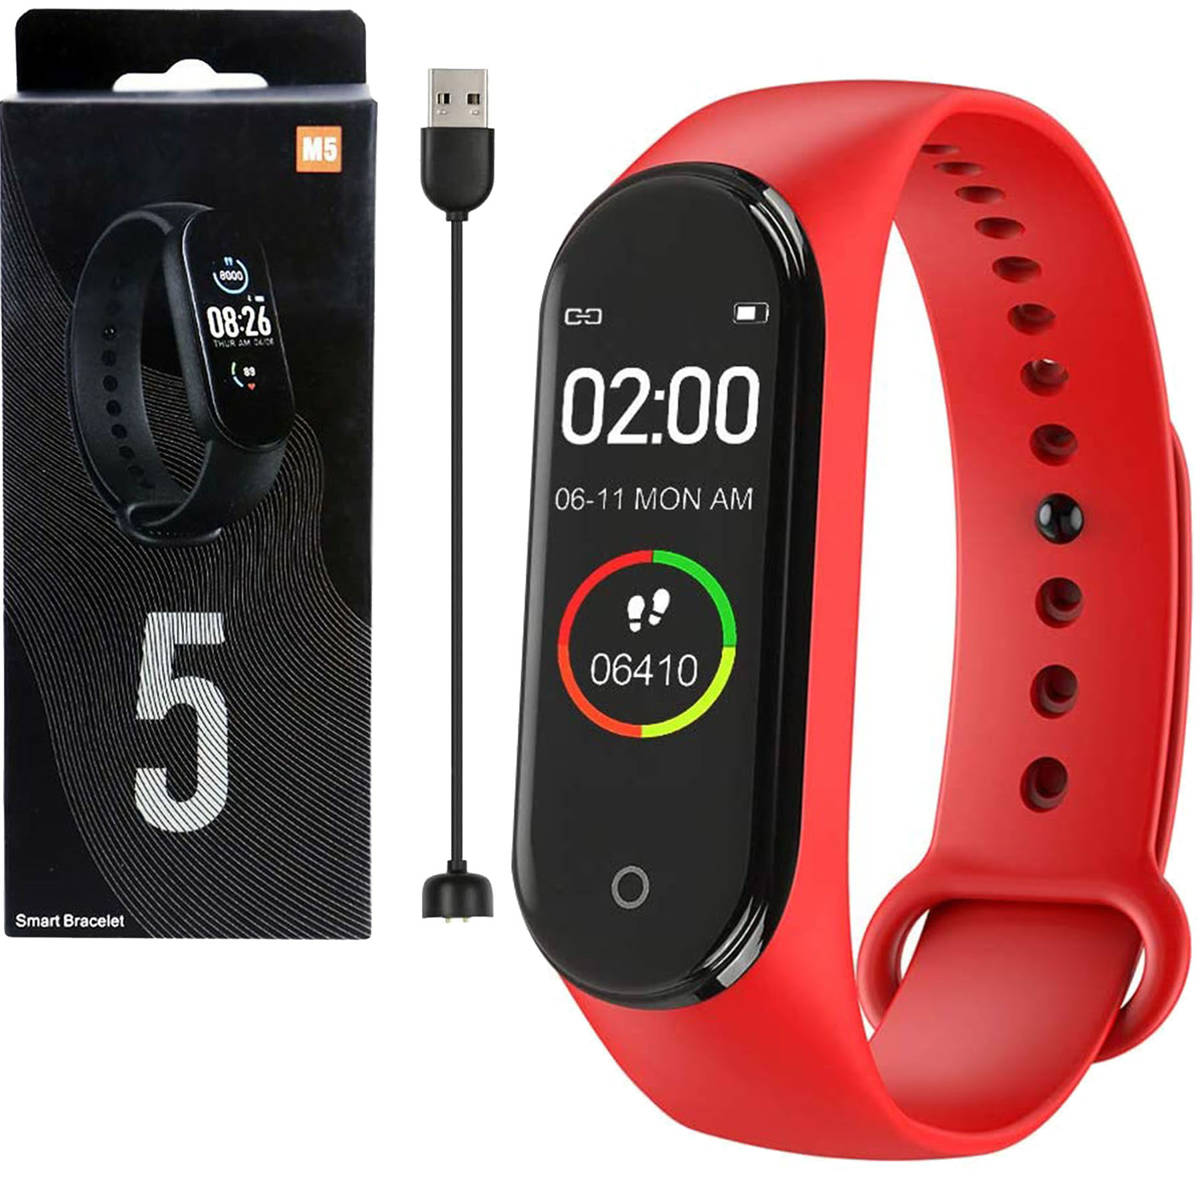 Opaska Smart Watch Zegarek SmartBand M5 Czerwony